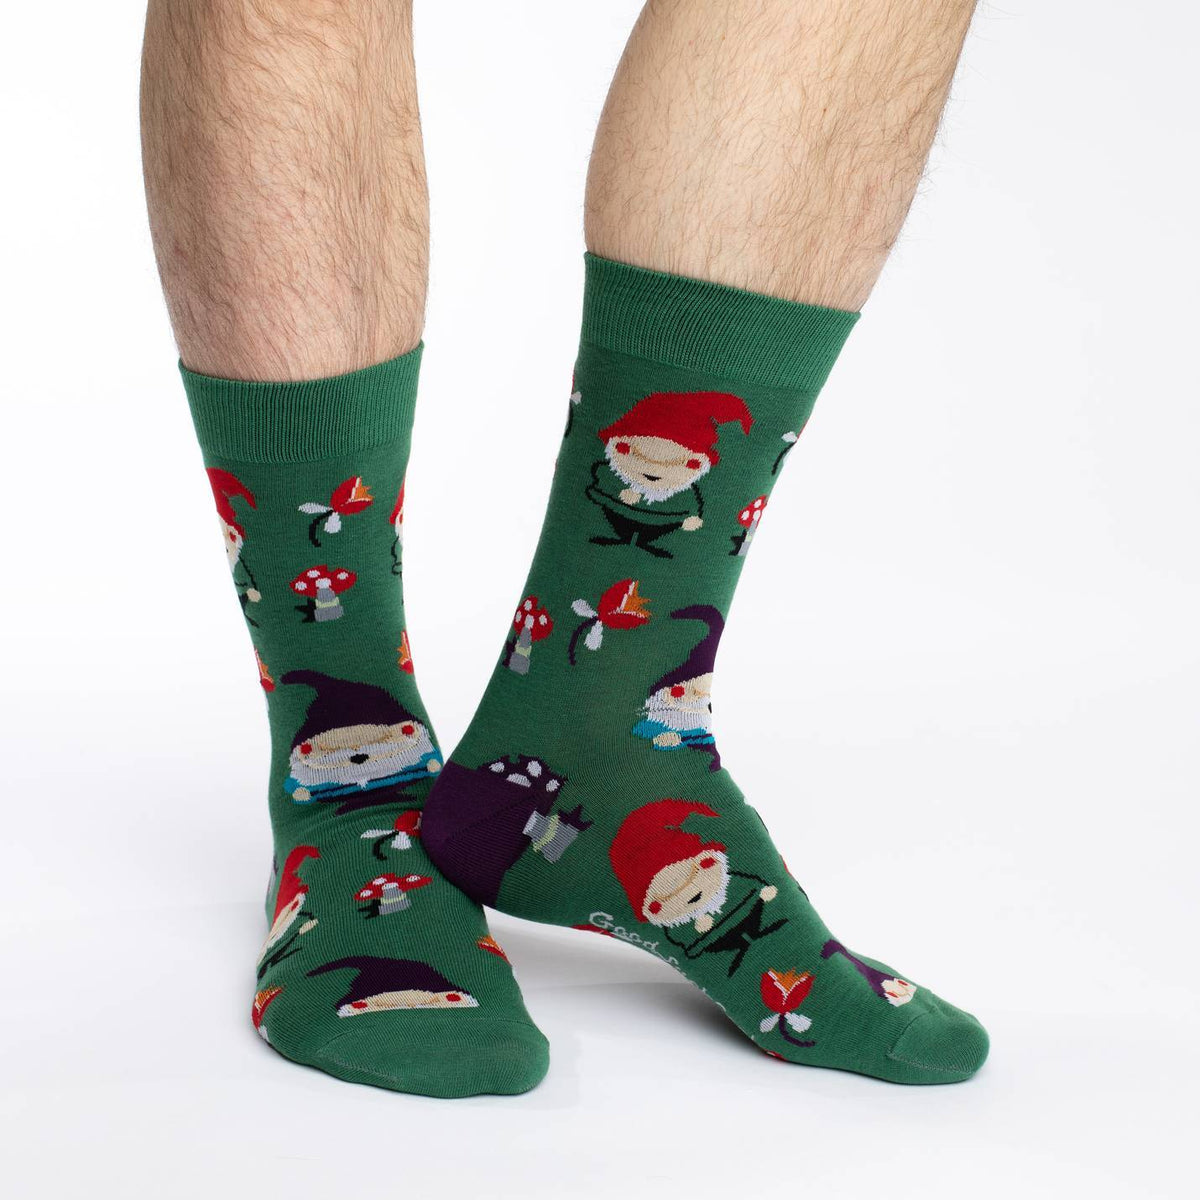 Men's Lawn Gnomes Socks